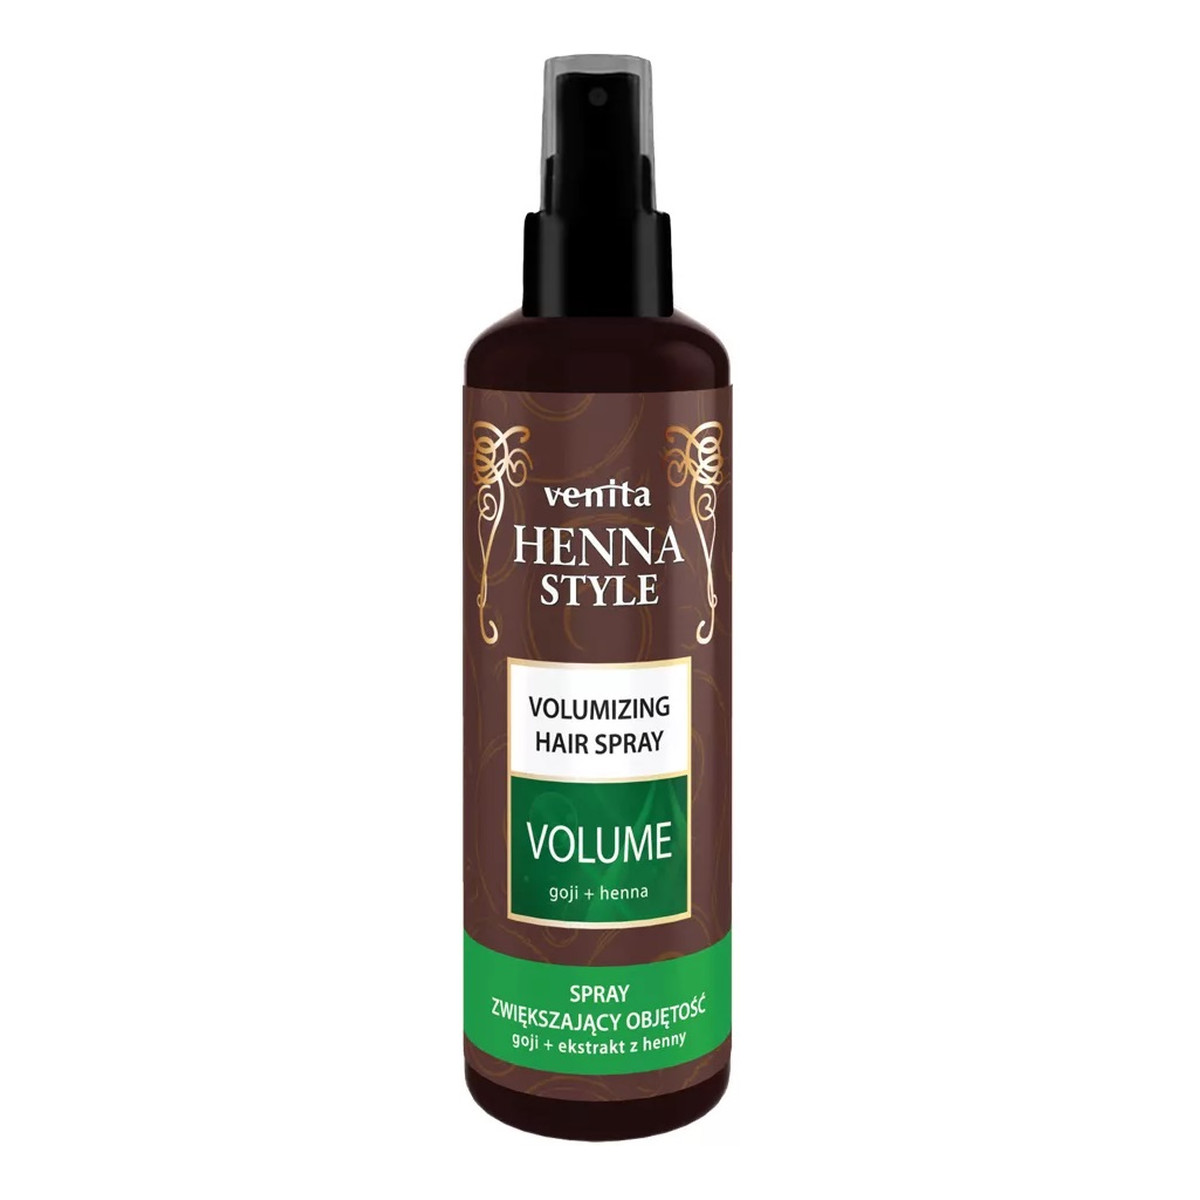 Venita Henna style volume spray spray do włosów zwiększający objętość 200ml